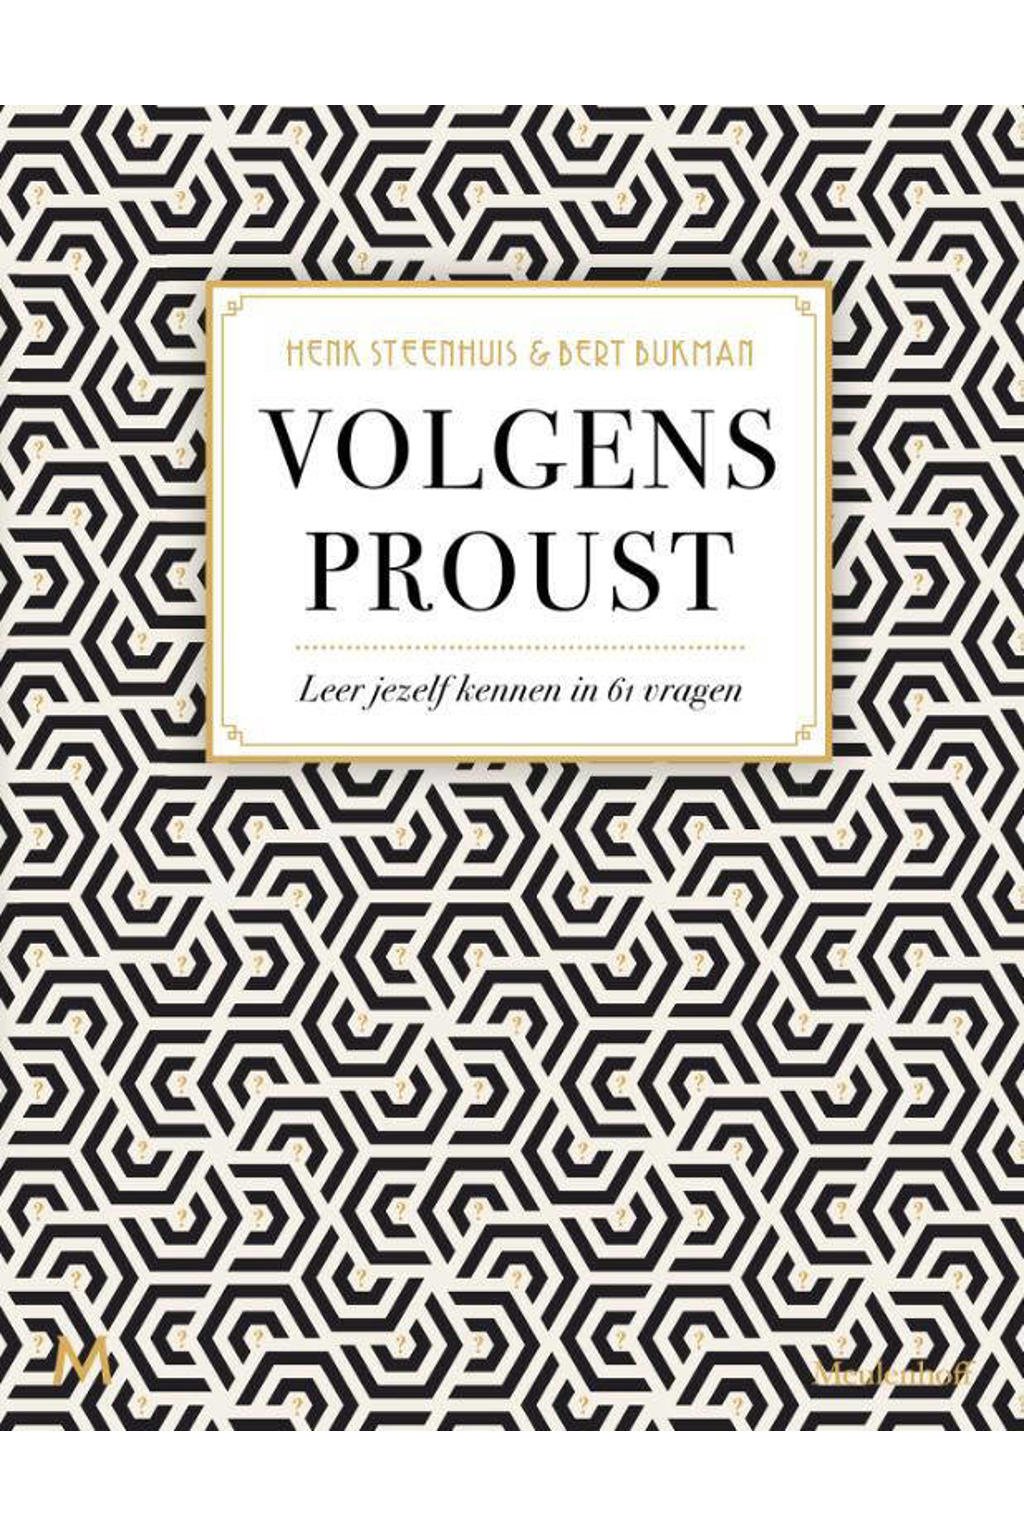 Volgens Proust - Henk Steenhuis en Bert Bukman